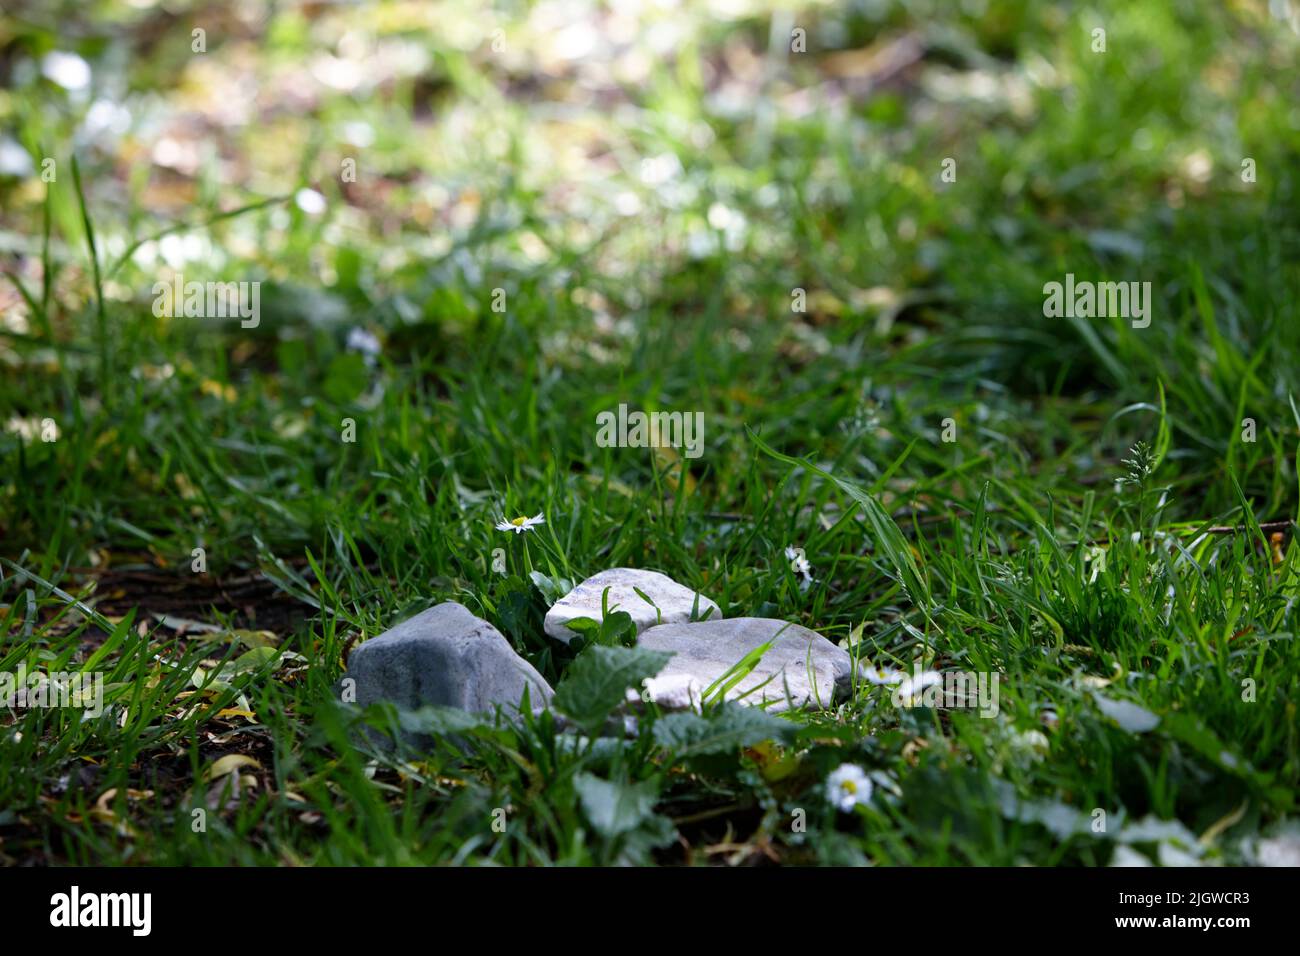 grupo de piedras a la luz del sol tumbado en la hierba Foto de stock